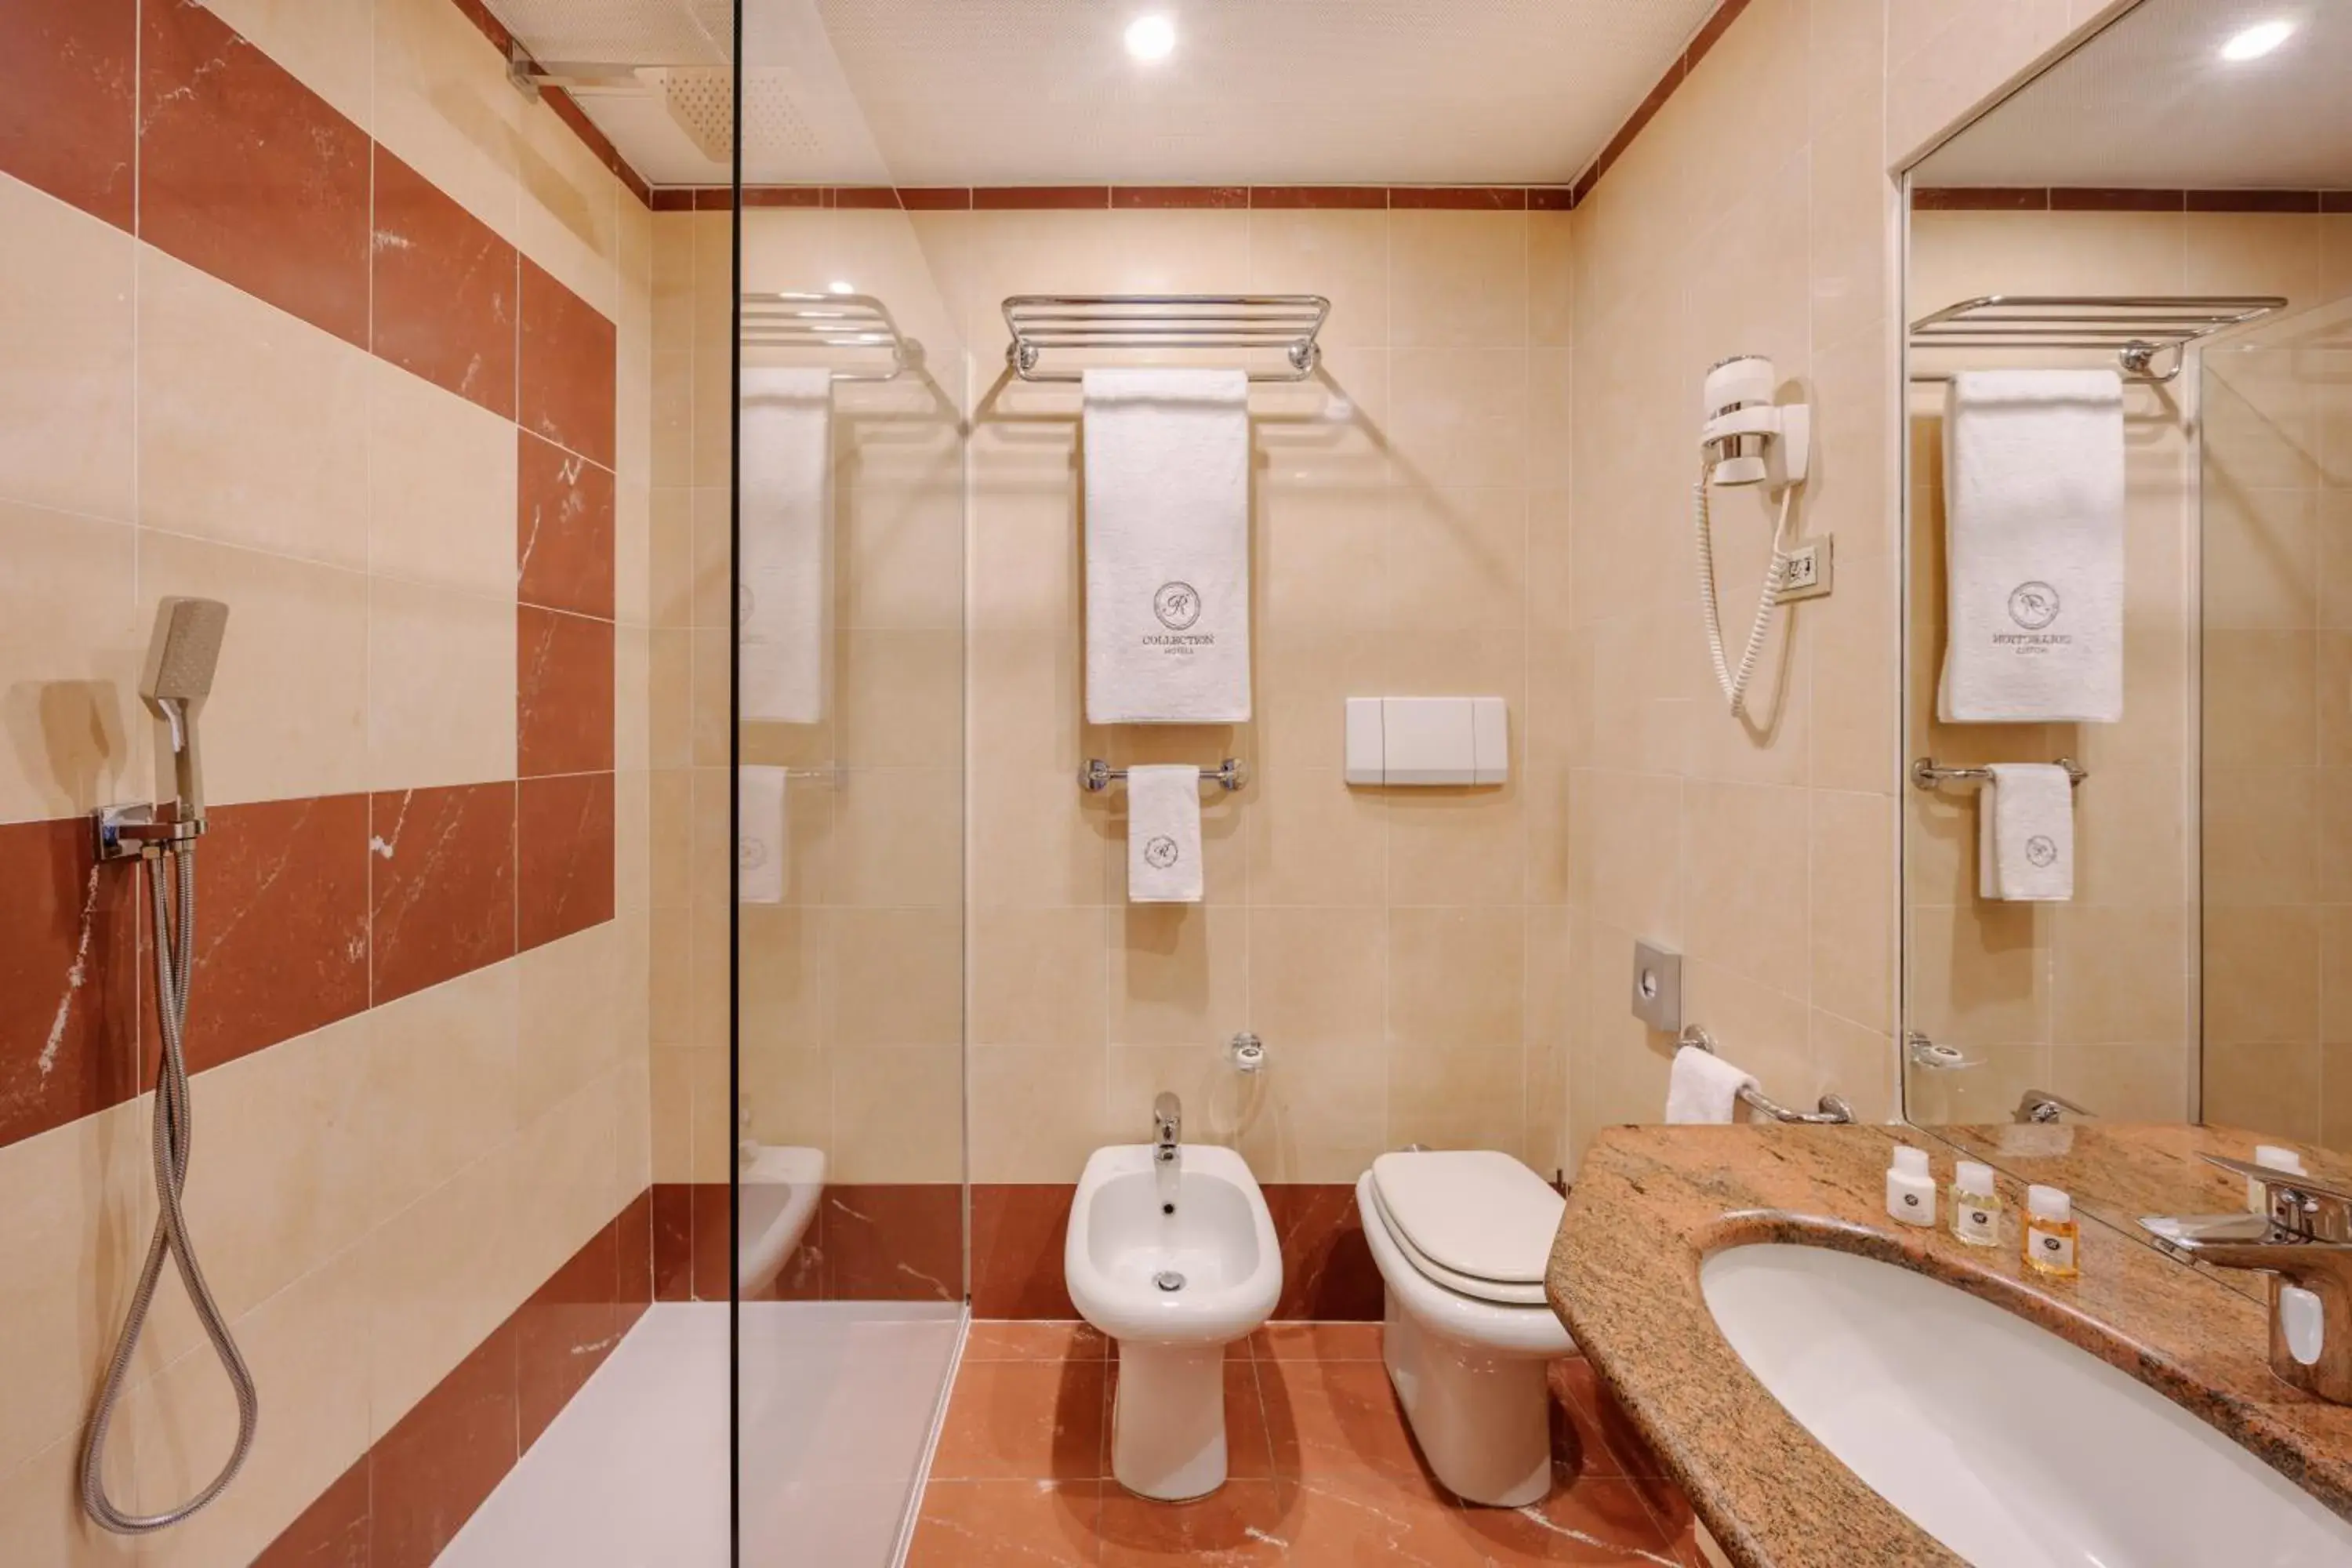 Bathroom in City Life Hotel Poliziano